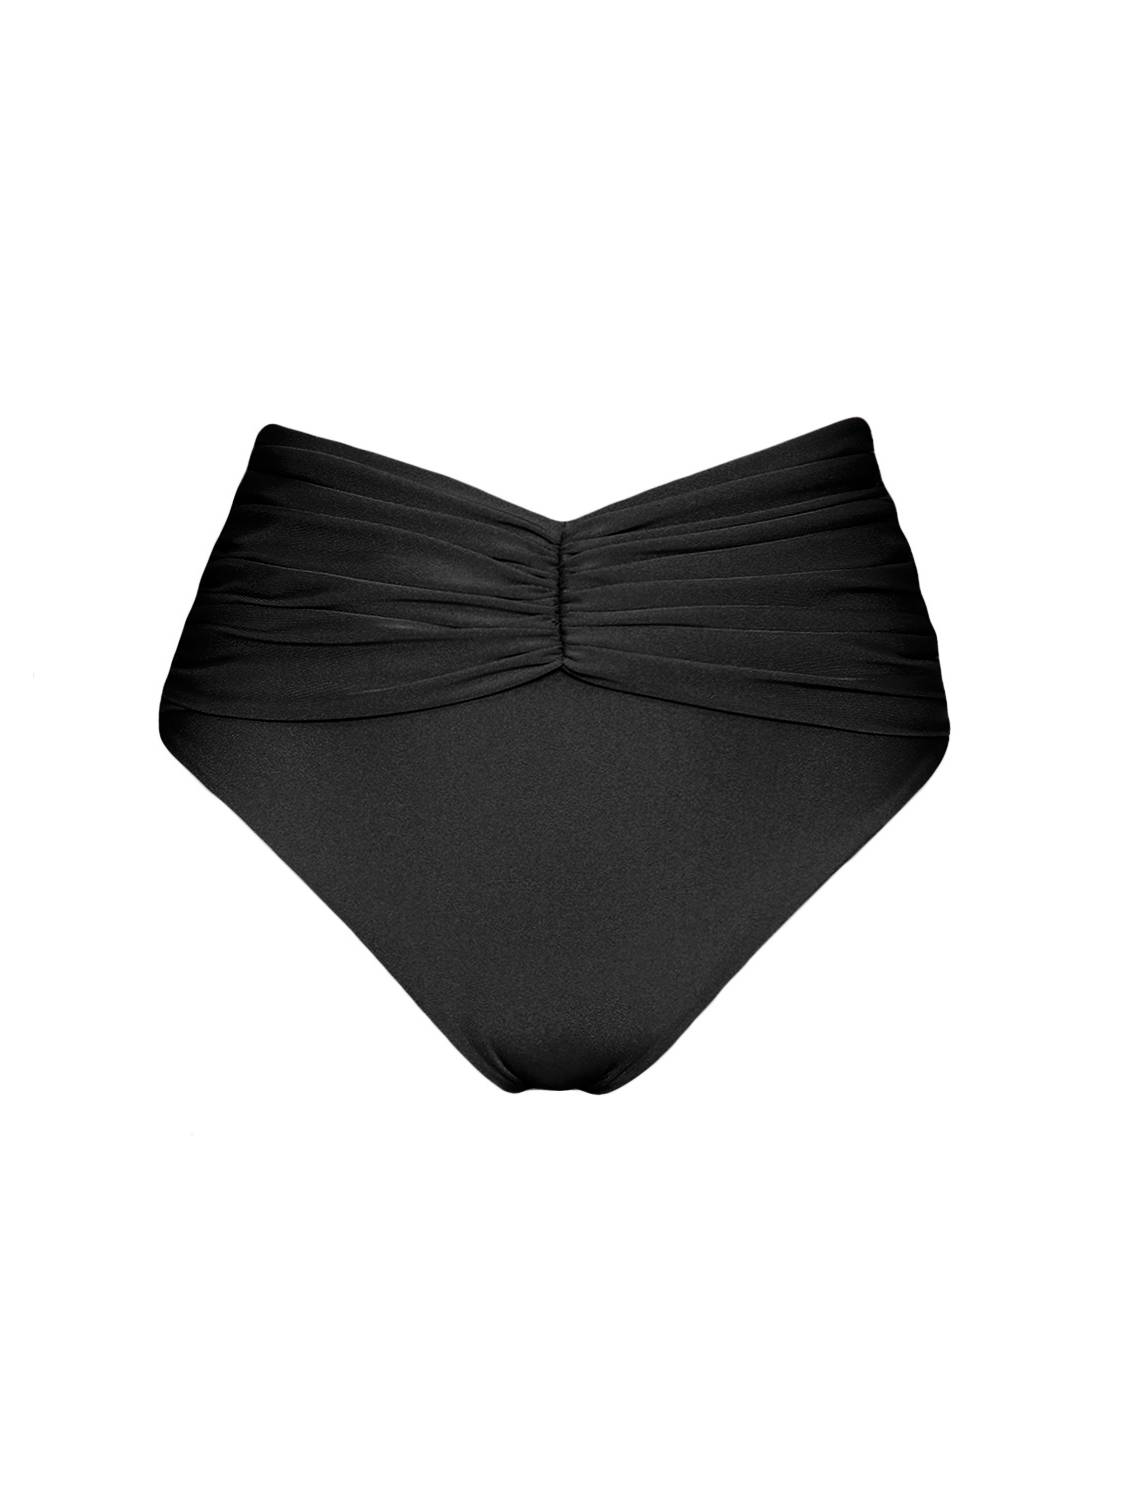 bikini czarne strój kąpielowy czarny polska marka dół bikini-marszczony błyszczący czarny black-wiazany-trojkaty-majtki-matala-z-wysokim-stanem czarne-shiny draped high waist black bottom swimwear swimsuit 2